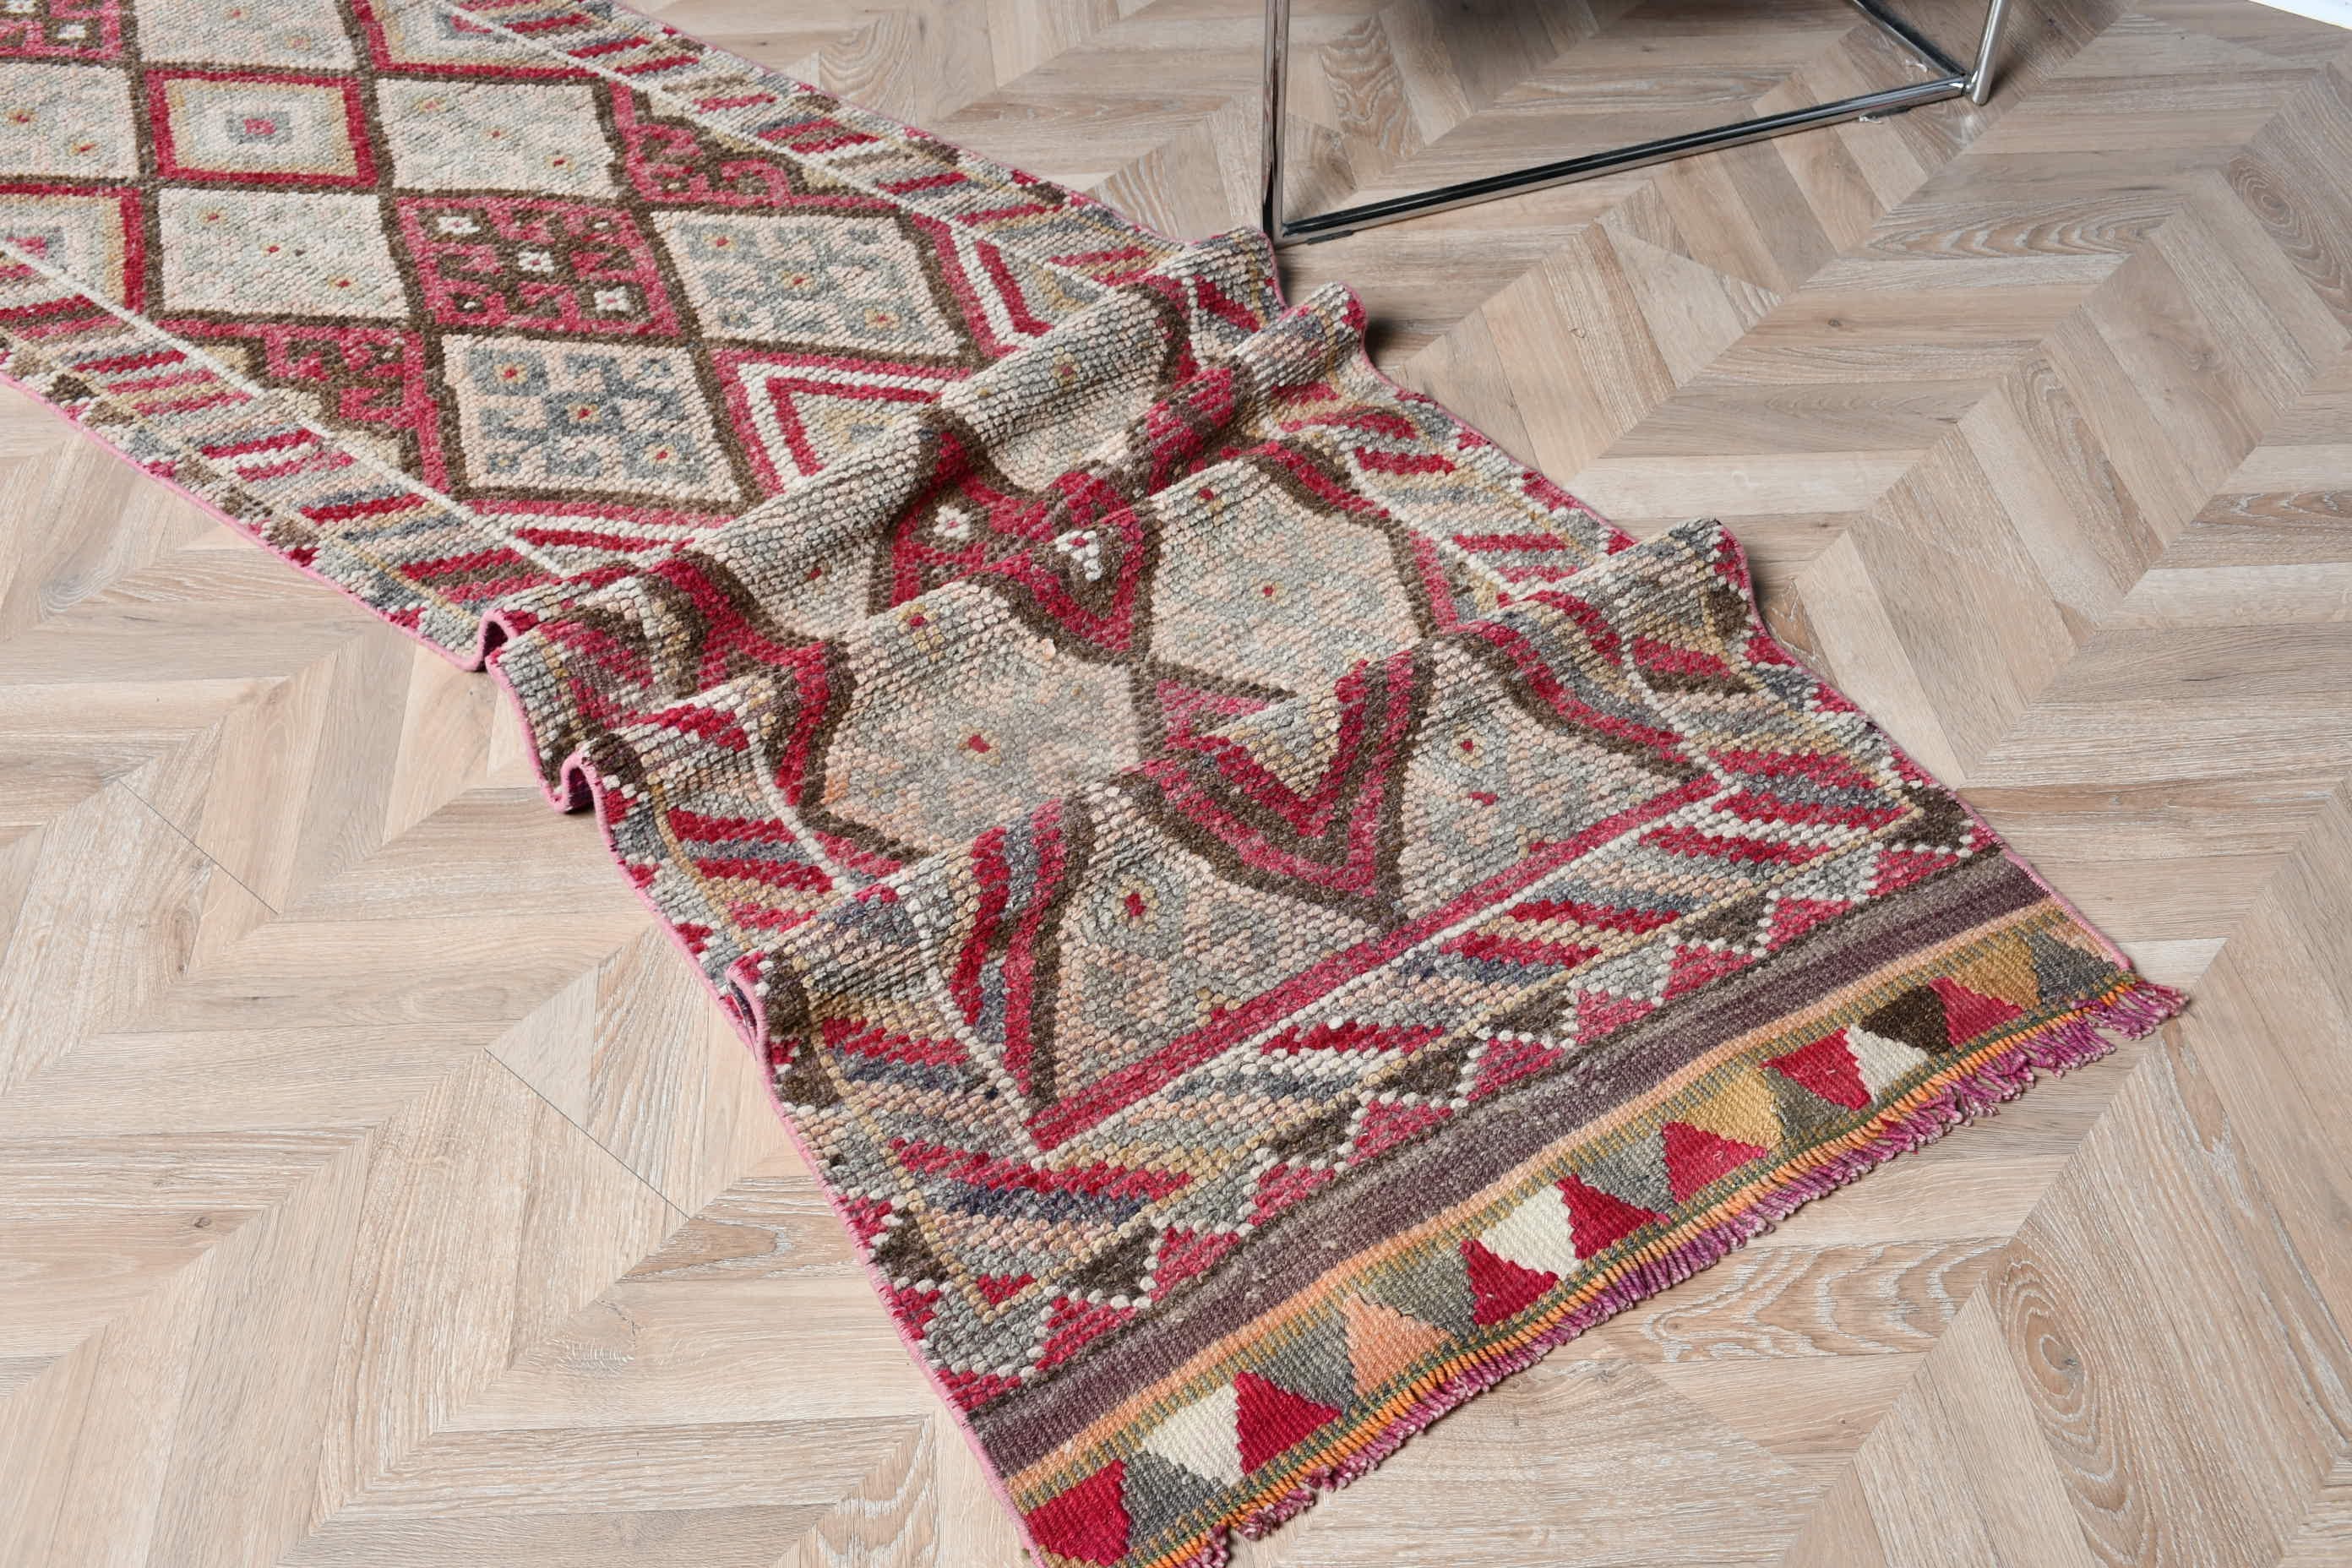 Turkish Rug, Vintage Rugs, Corridor Rug, Rugs for Kitchen, Beige Oriental Rugs, Anatolian Rug, Stair Rug, 2.5x15.4 ft Runner Rug, Cool Rug